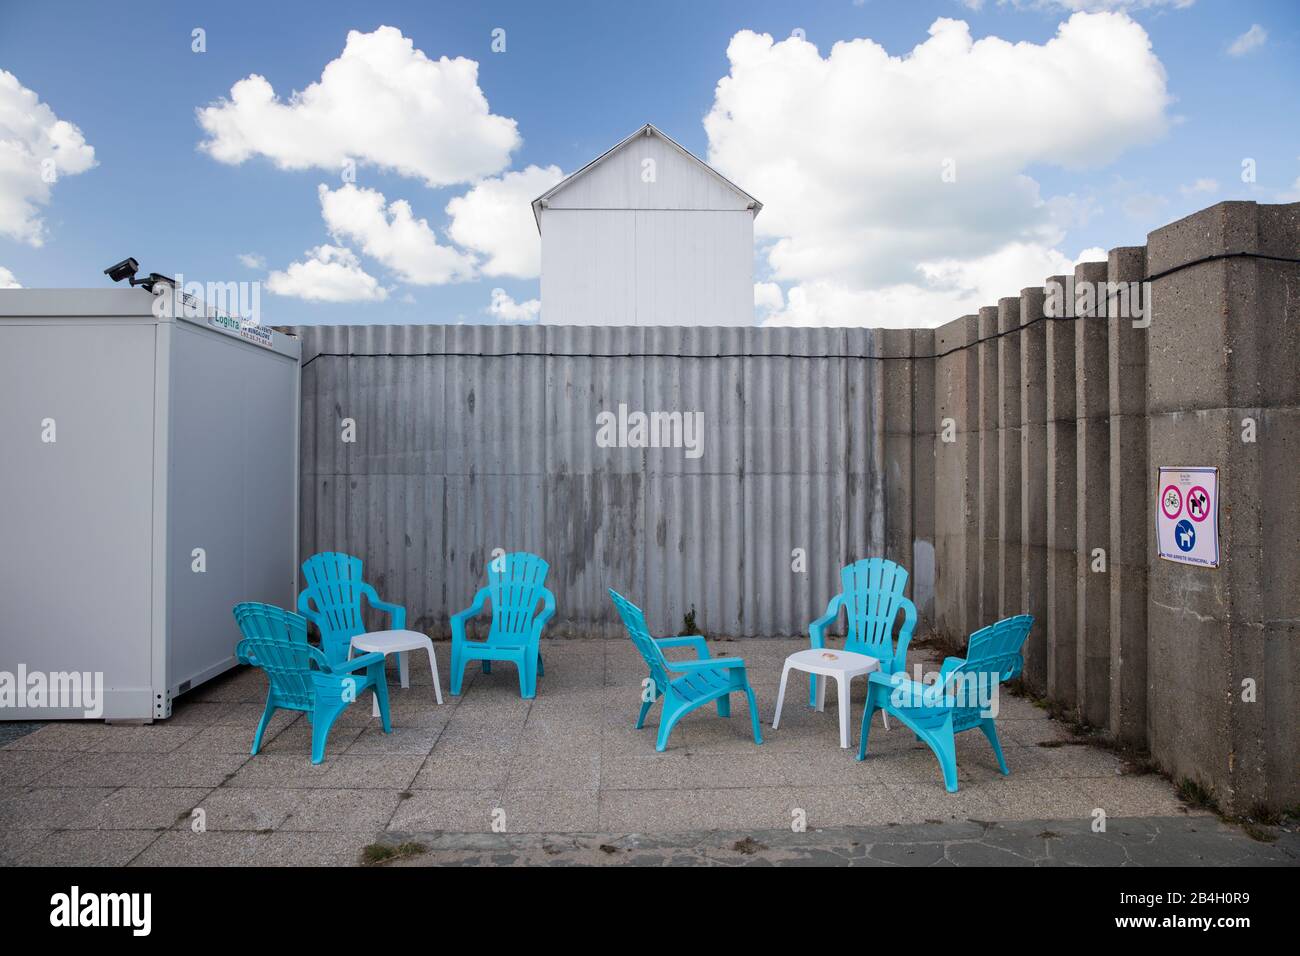 Normandie, 6 chaises bleues, abri contre le vent, café, plage Banque D'Images